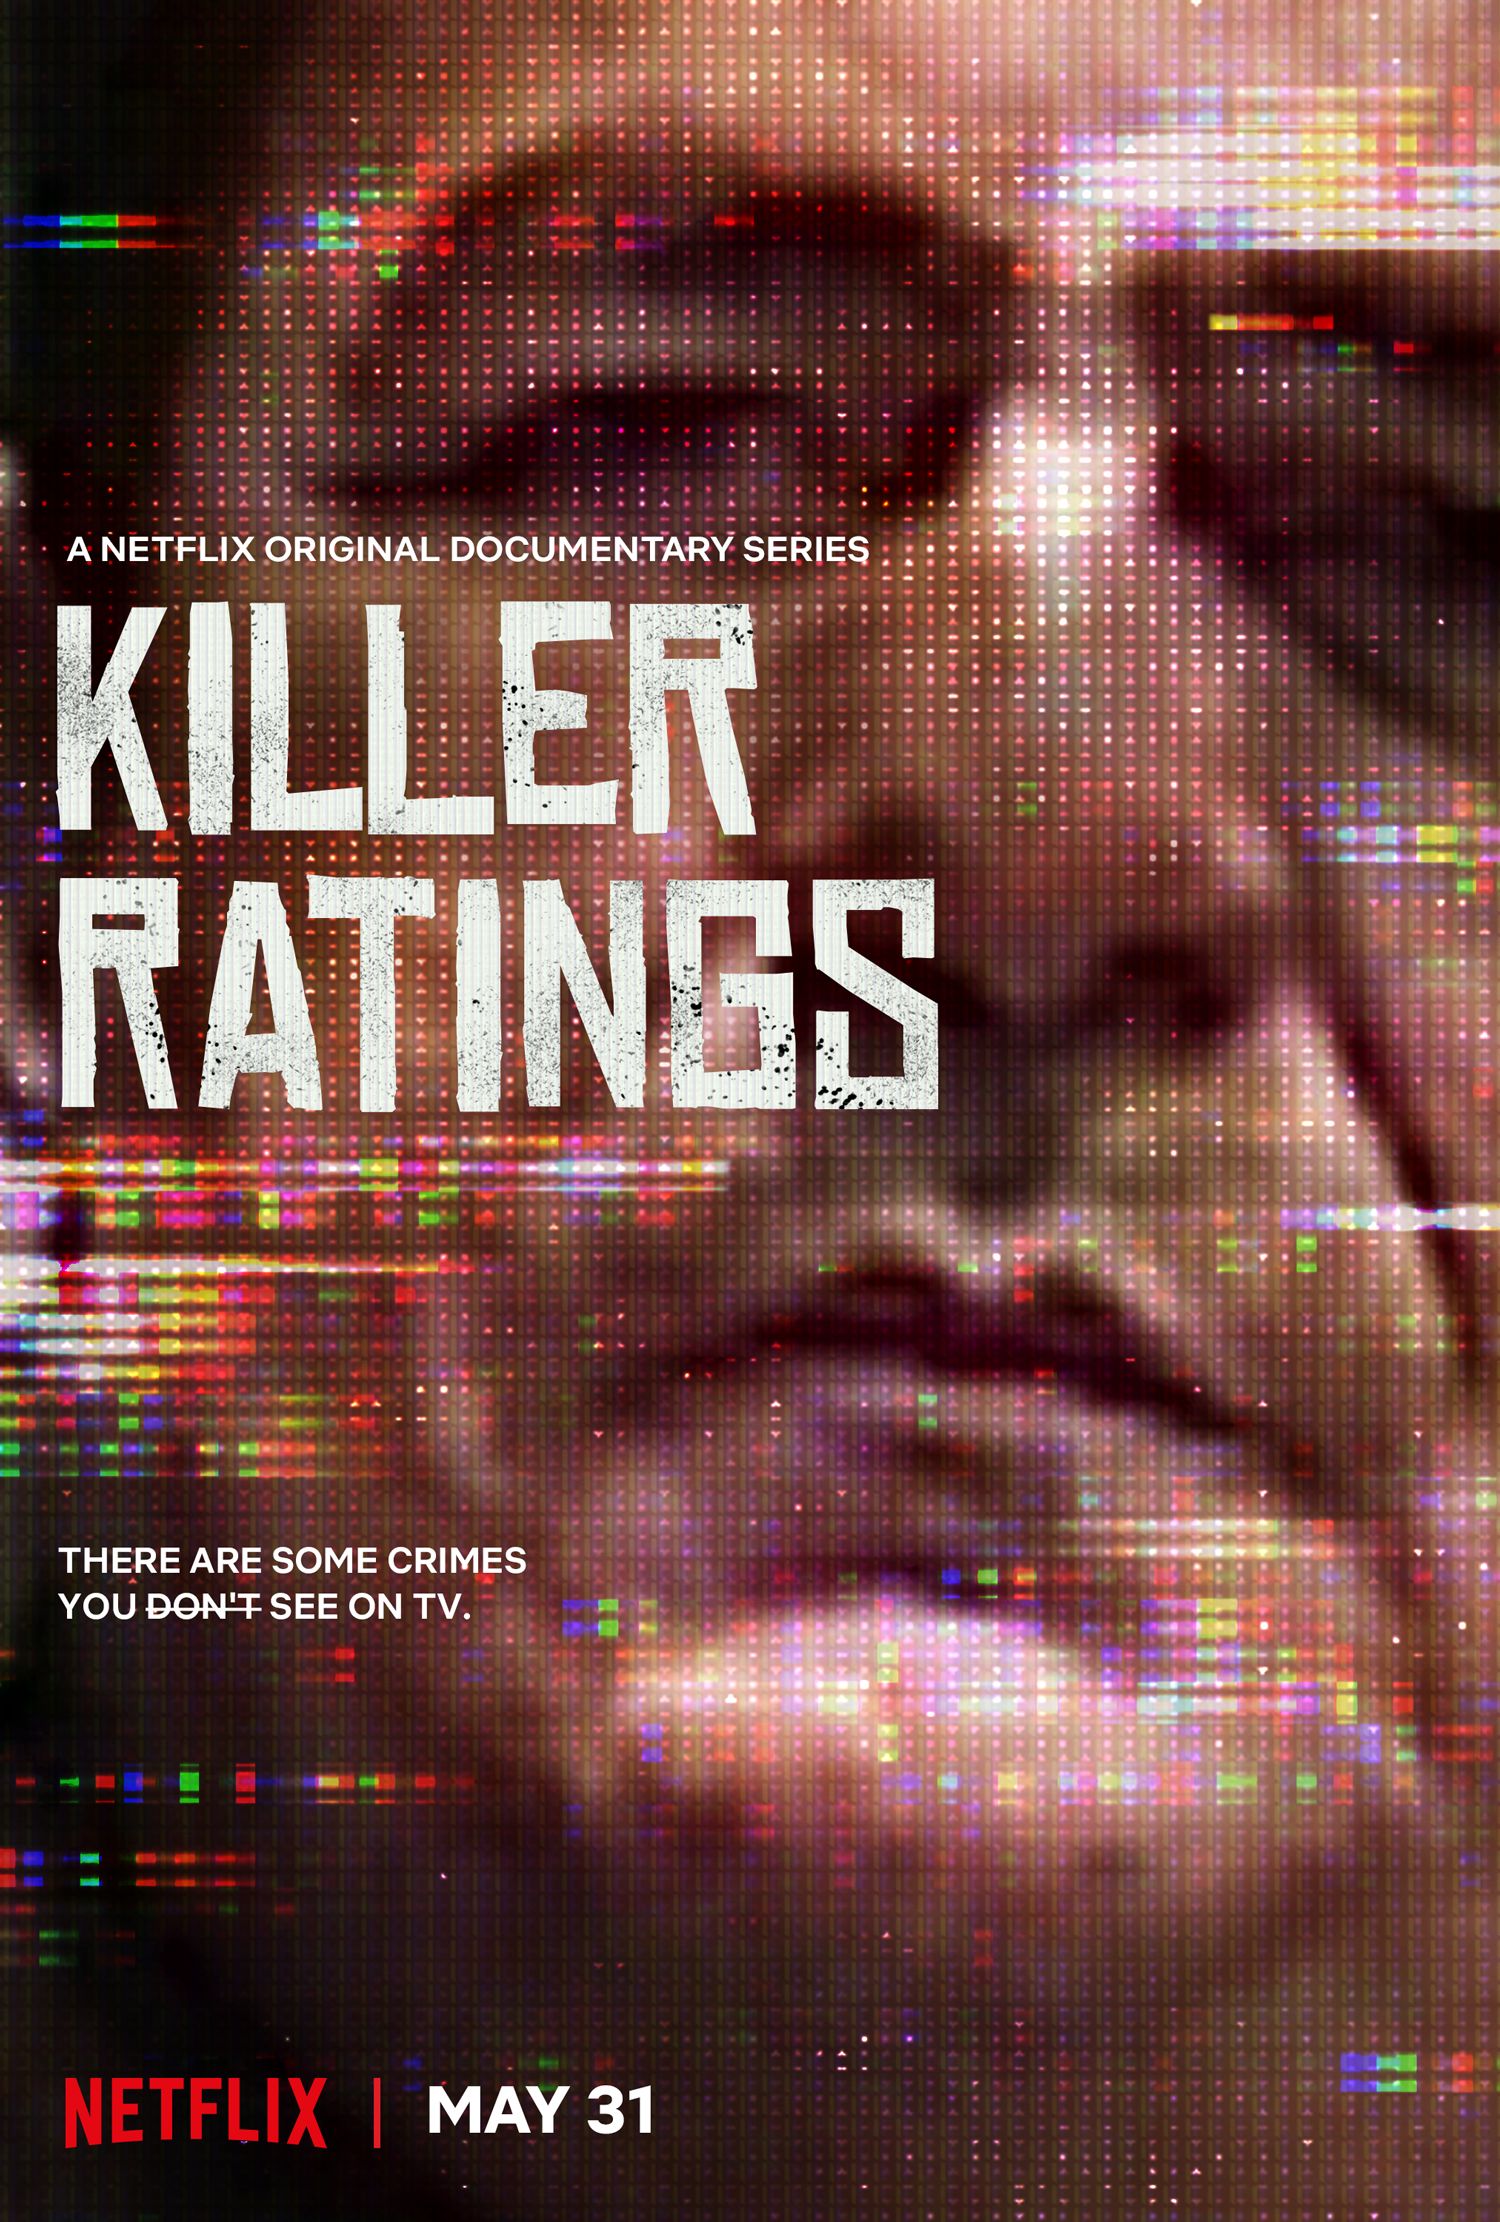 20 Best Serial Killer Documentaries, Ranked